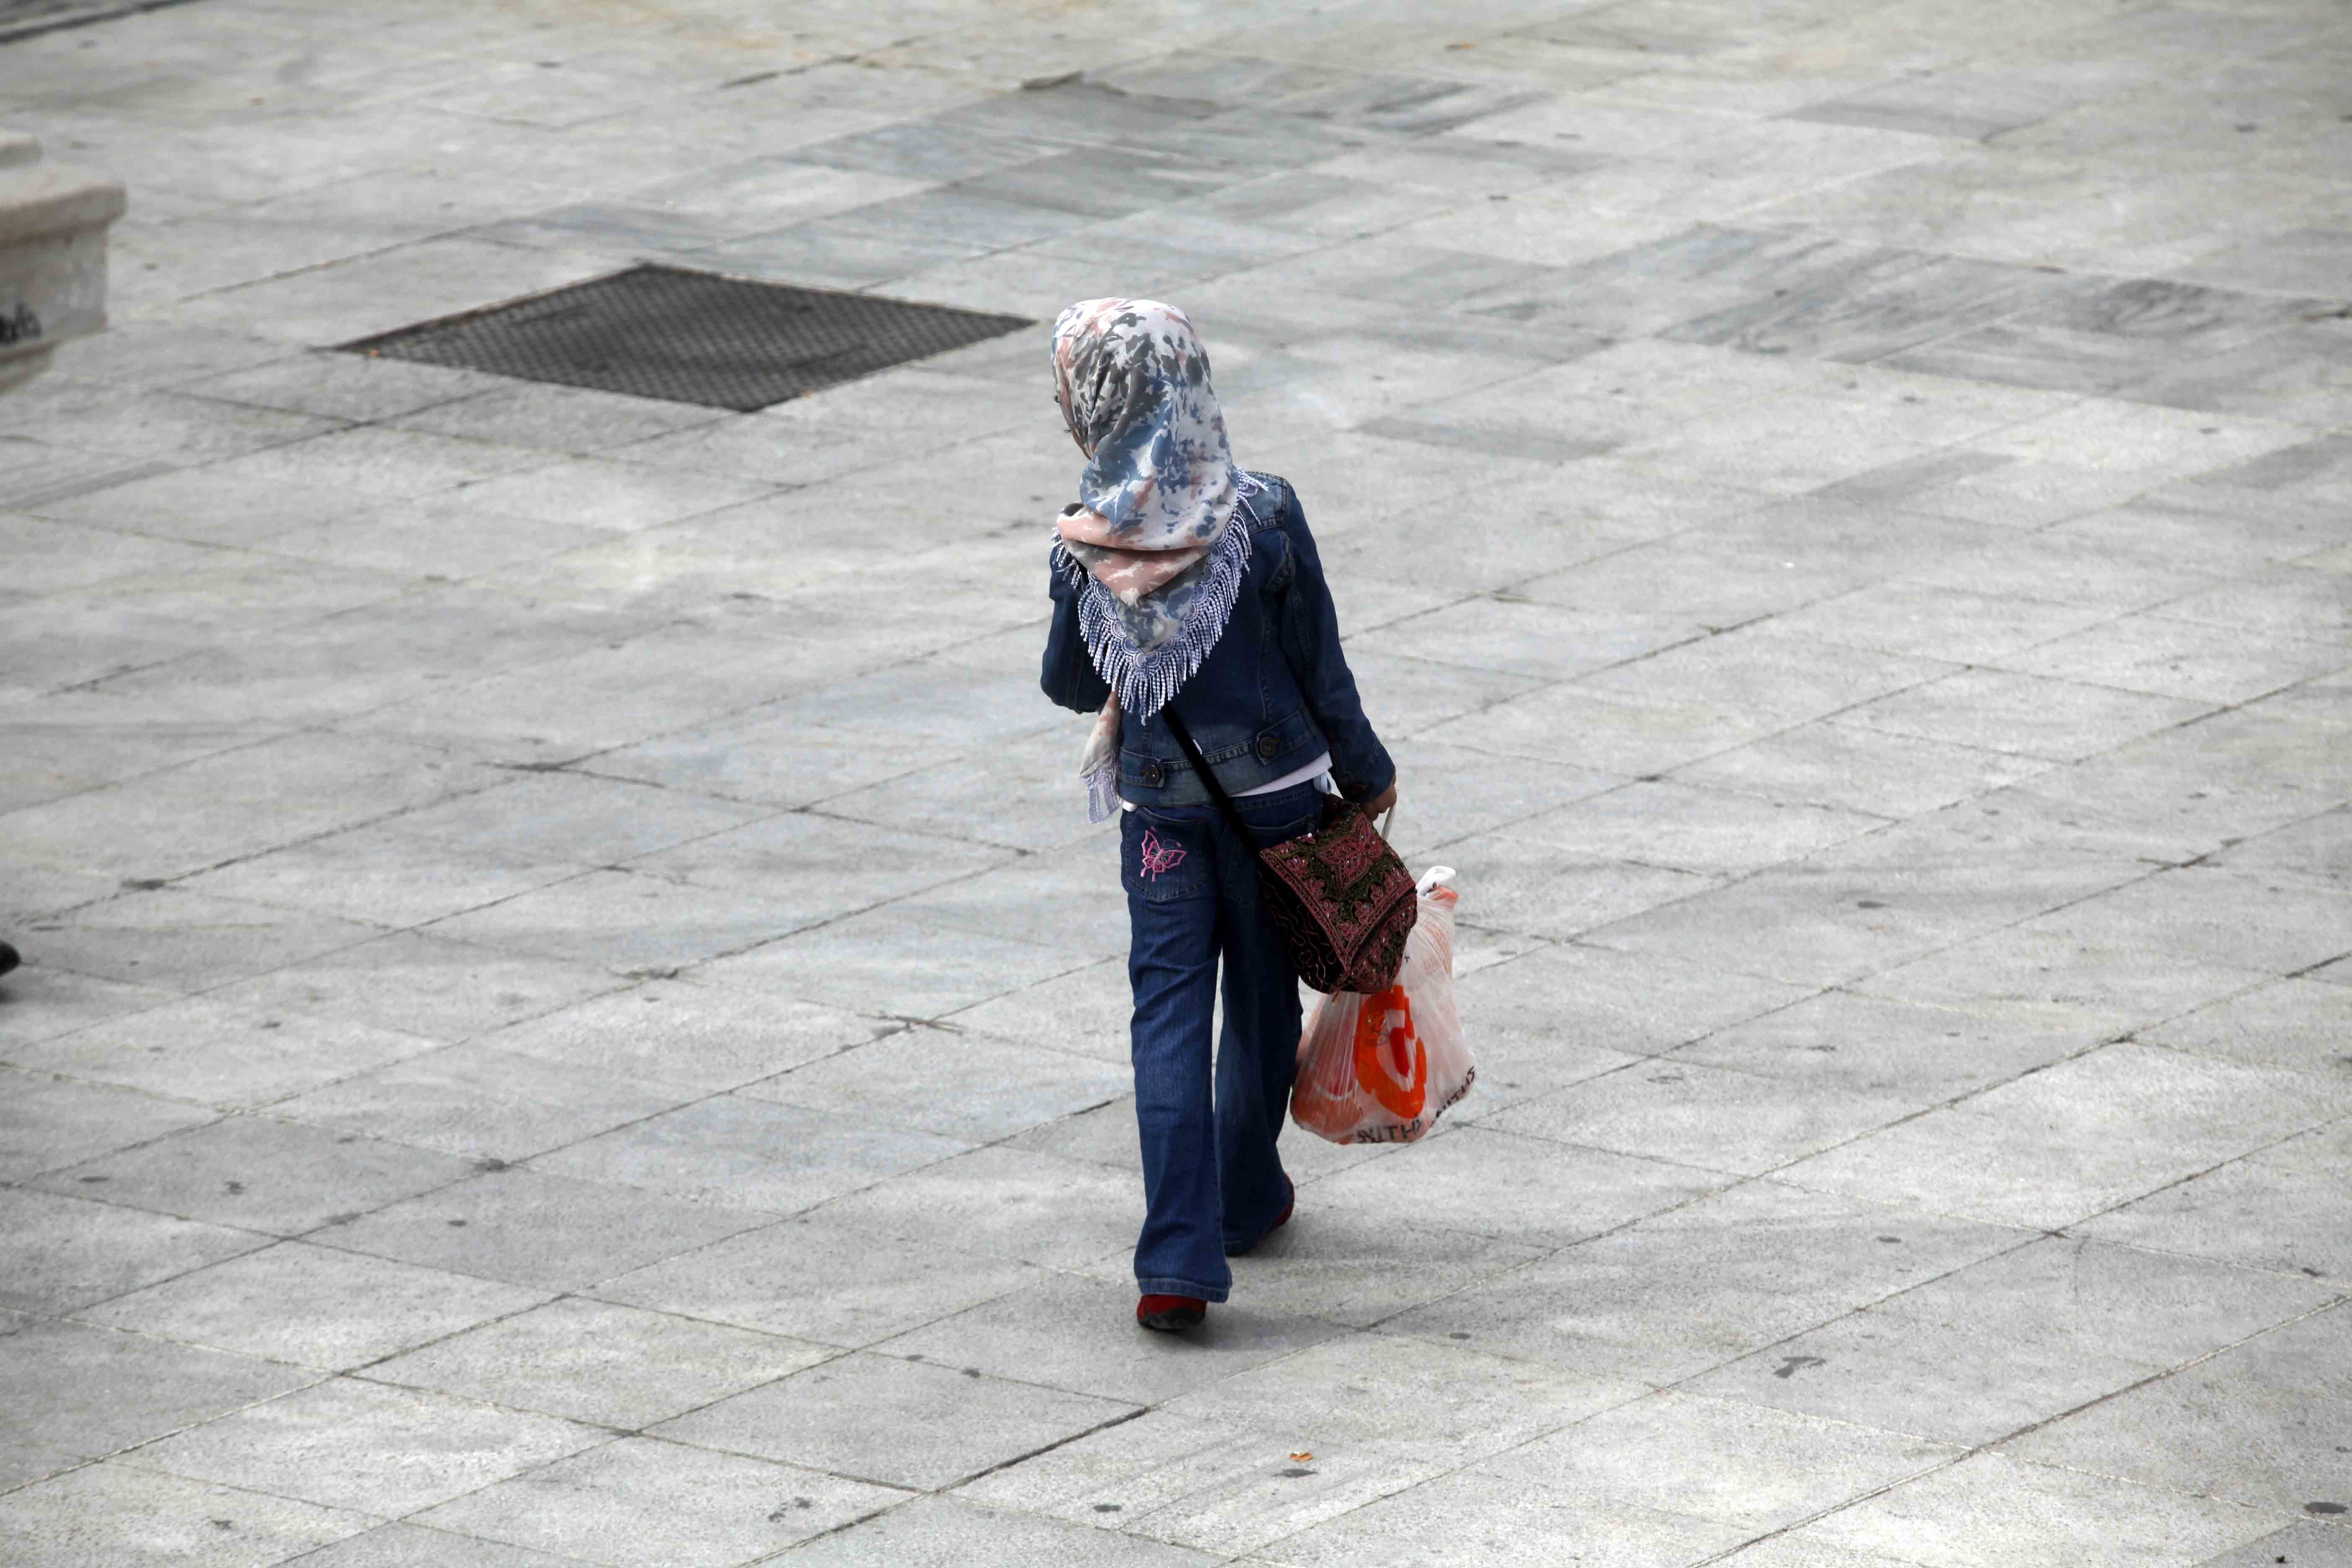 Σε απαγόρευση της μαντίλας σε όλους τους δημόσιους χώρους προχωρά το Βέλγιο